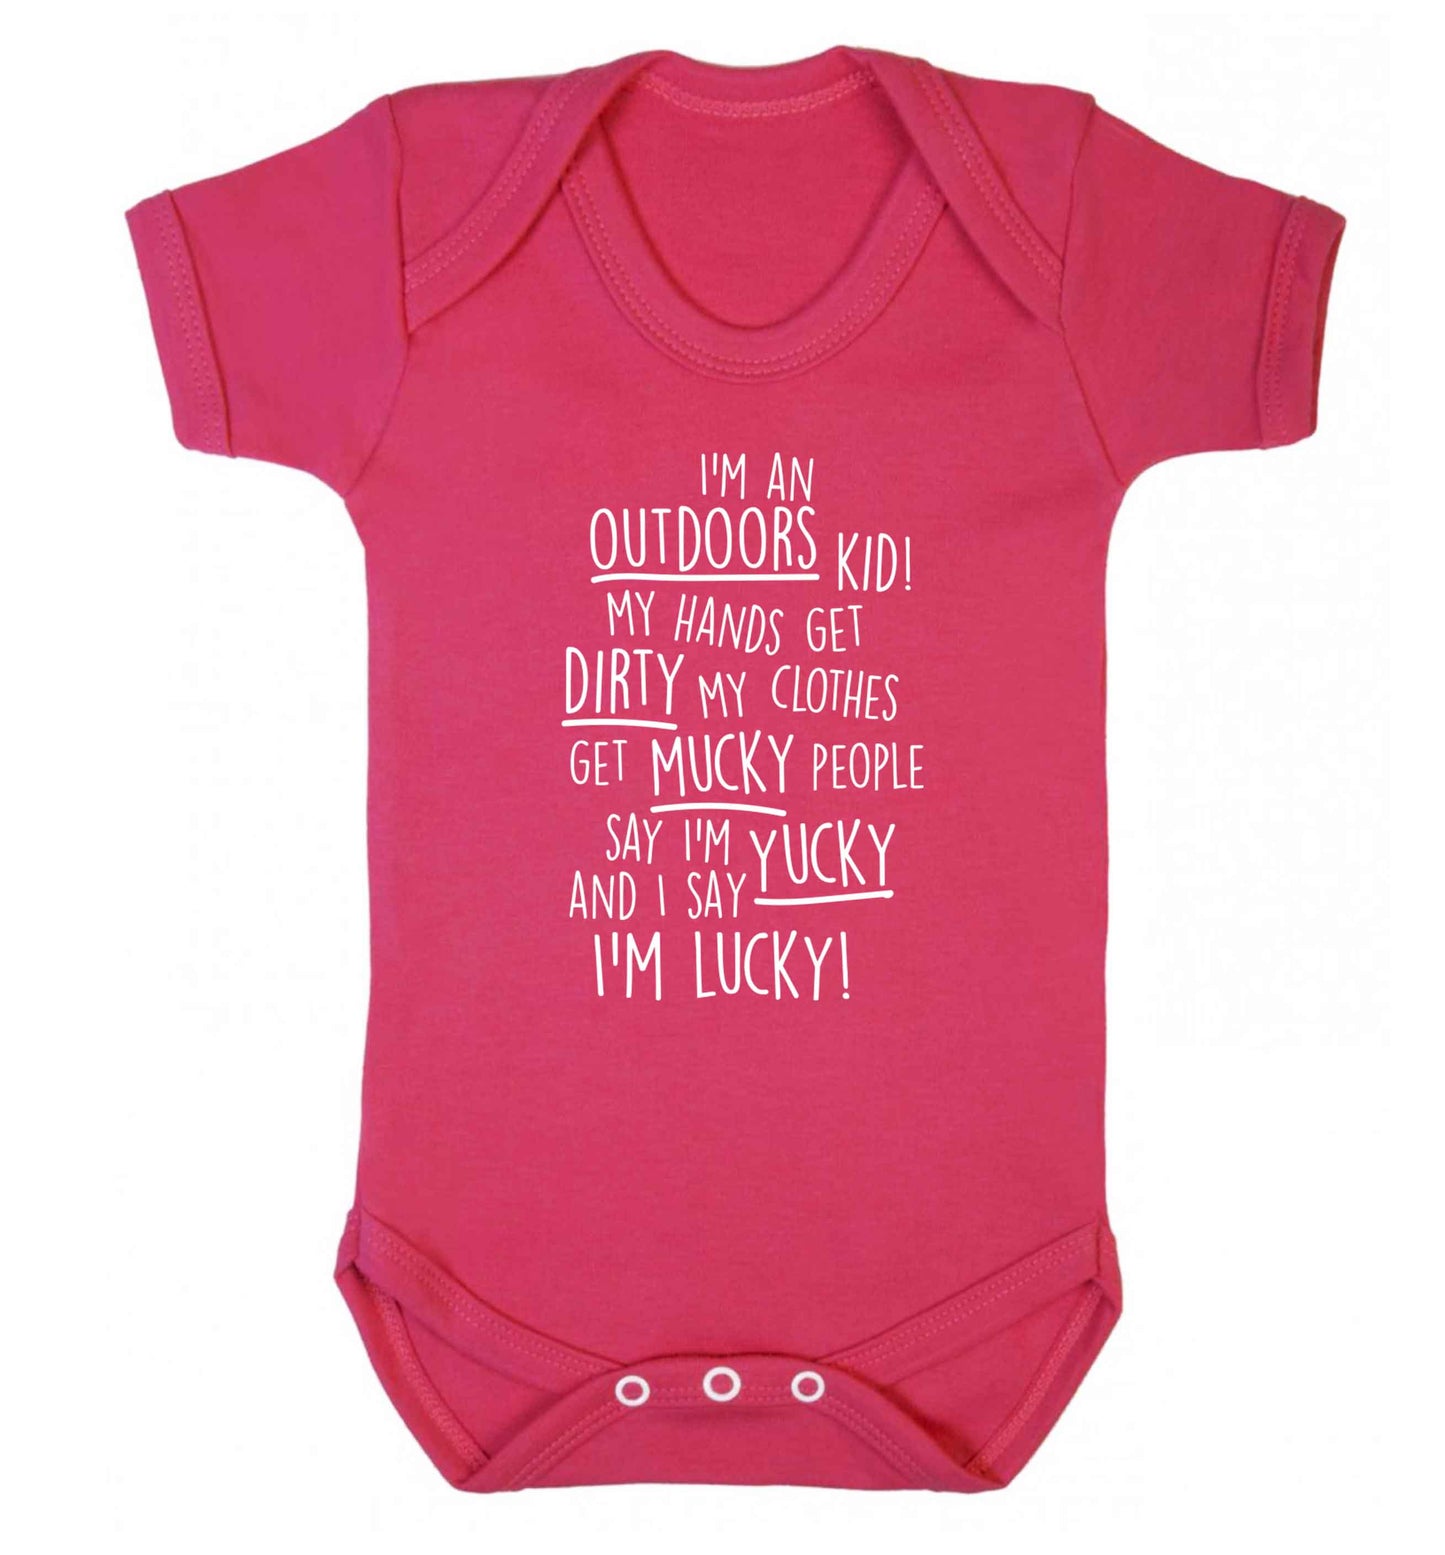 I'm an outdoors kid poem Baby Vest dark pink 18-24 months